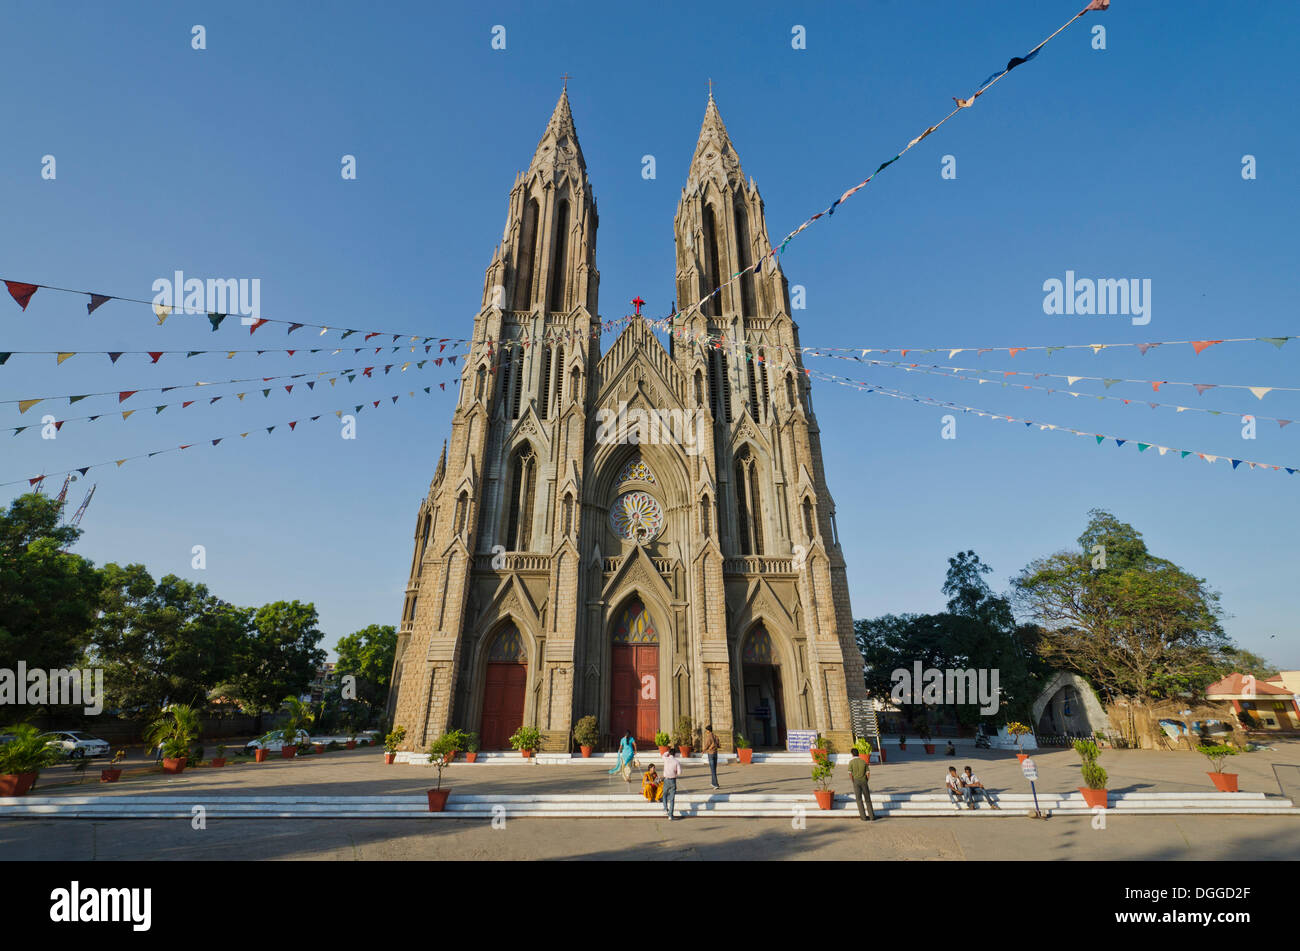 Eglise Sainte-philomène Cathédrale ornée pour la veille de Noël, à Mysore, Inde, Asie Banque D'Images